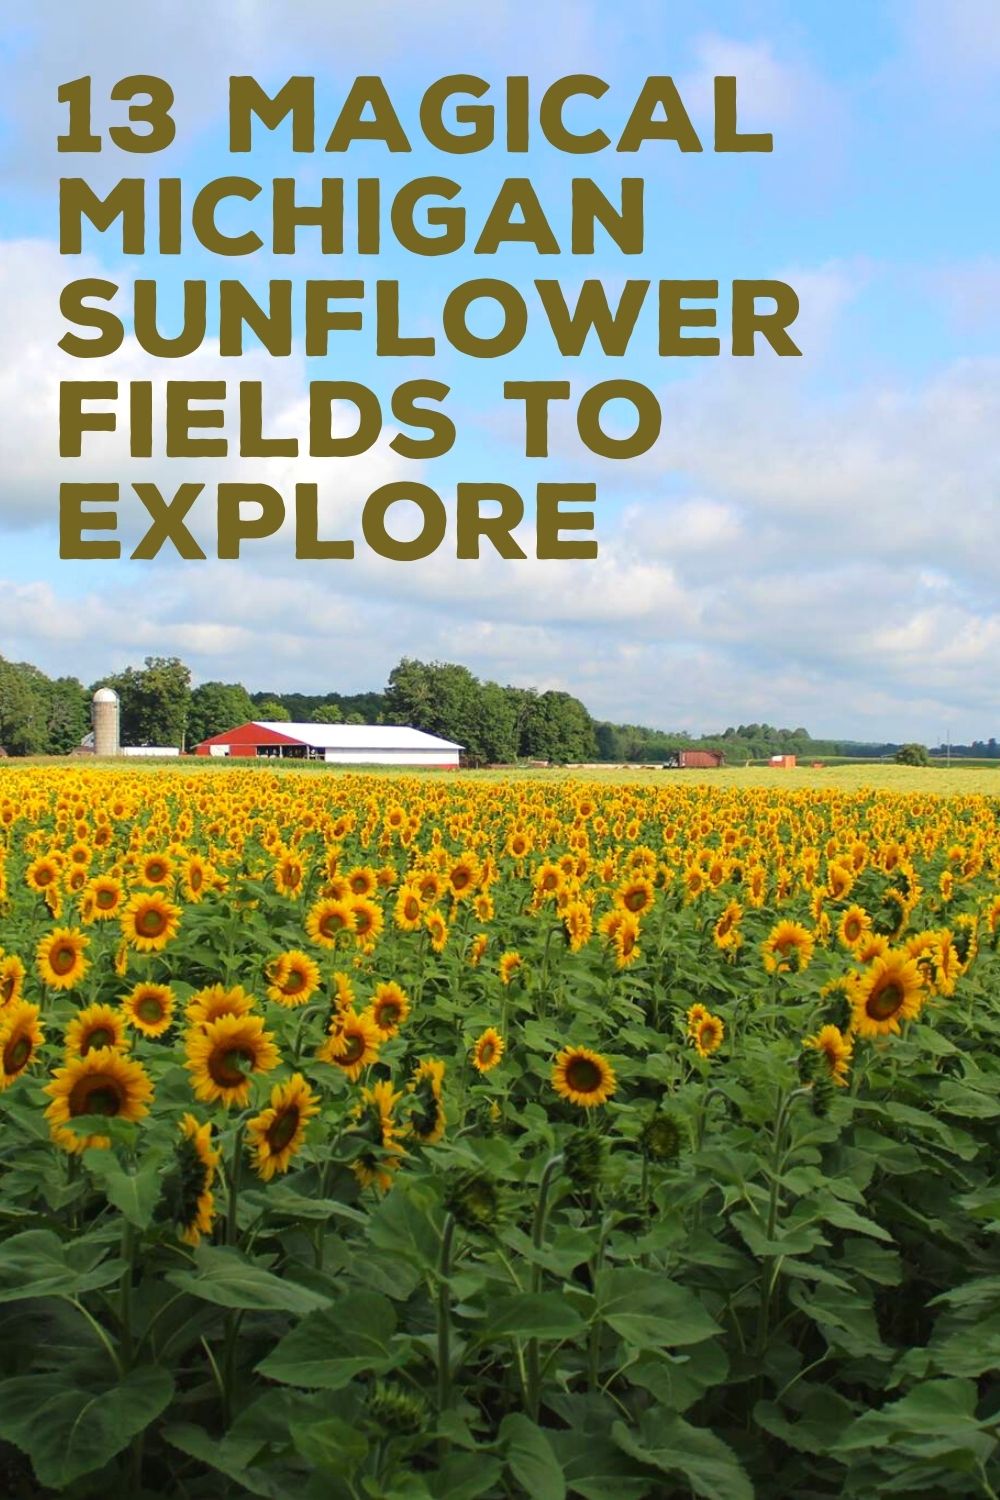 sunflower fields in Michigan 1